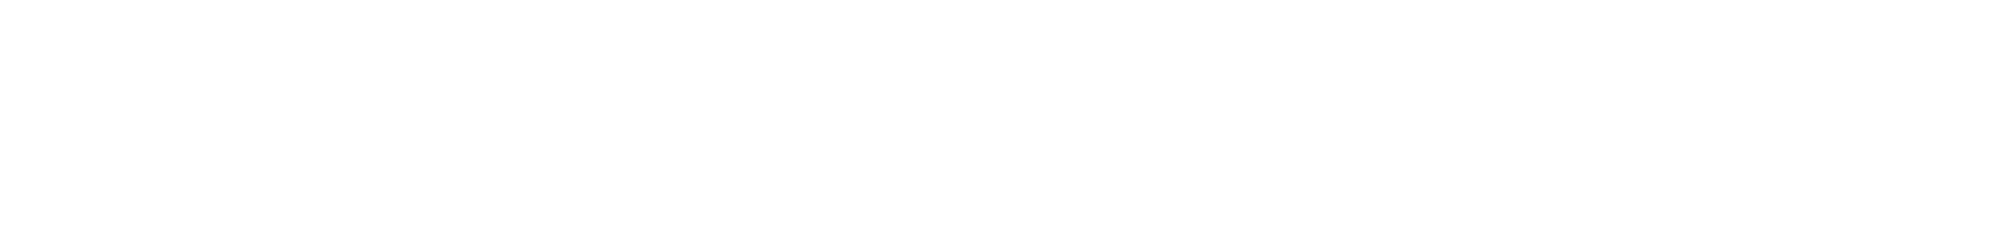 METEOchannel logo as seen on KODI Cable Network.